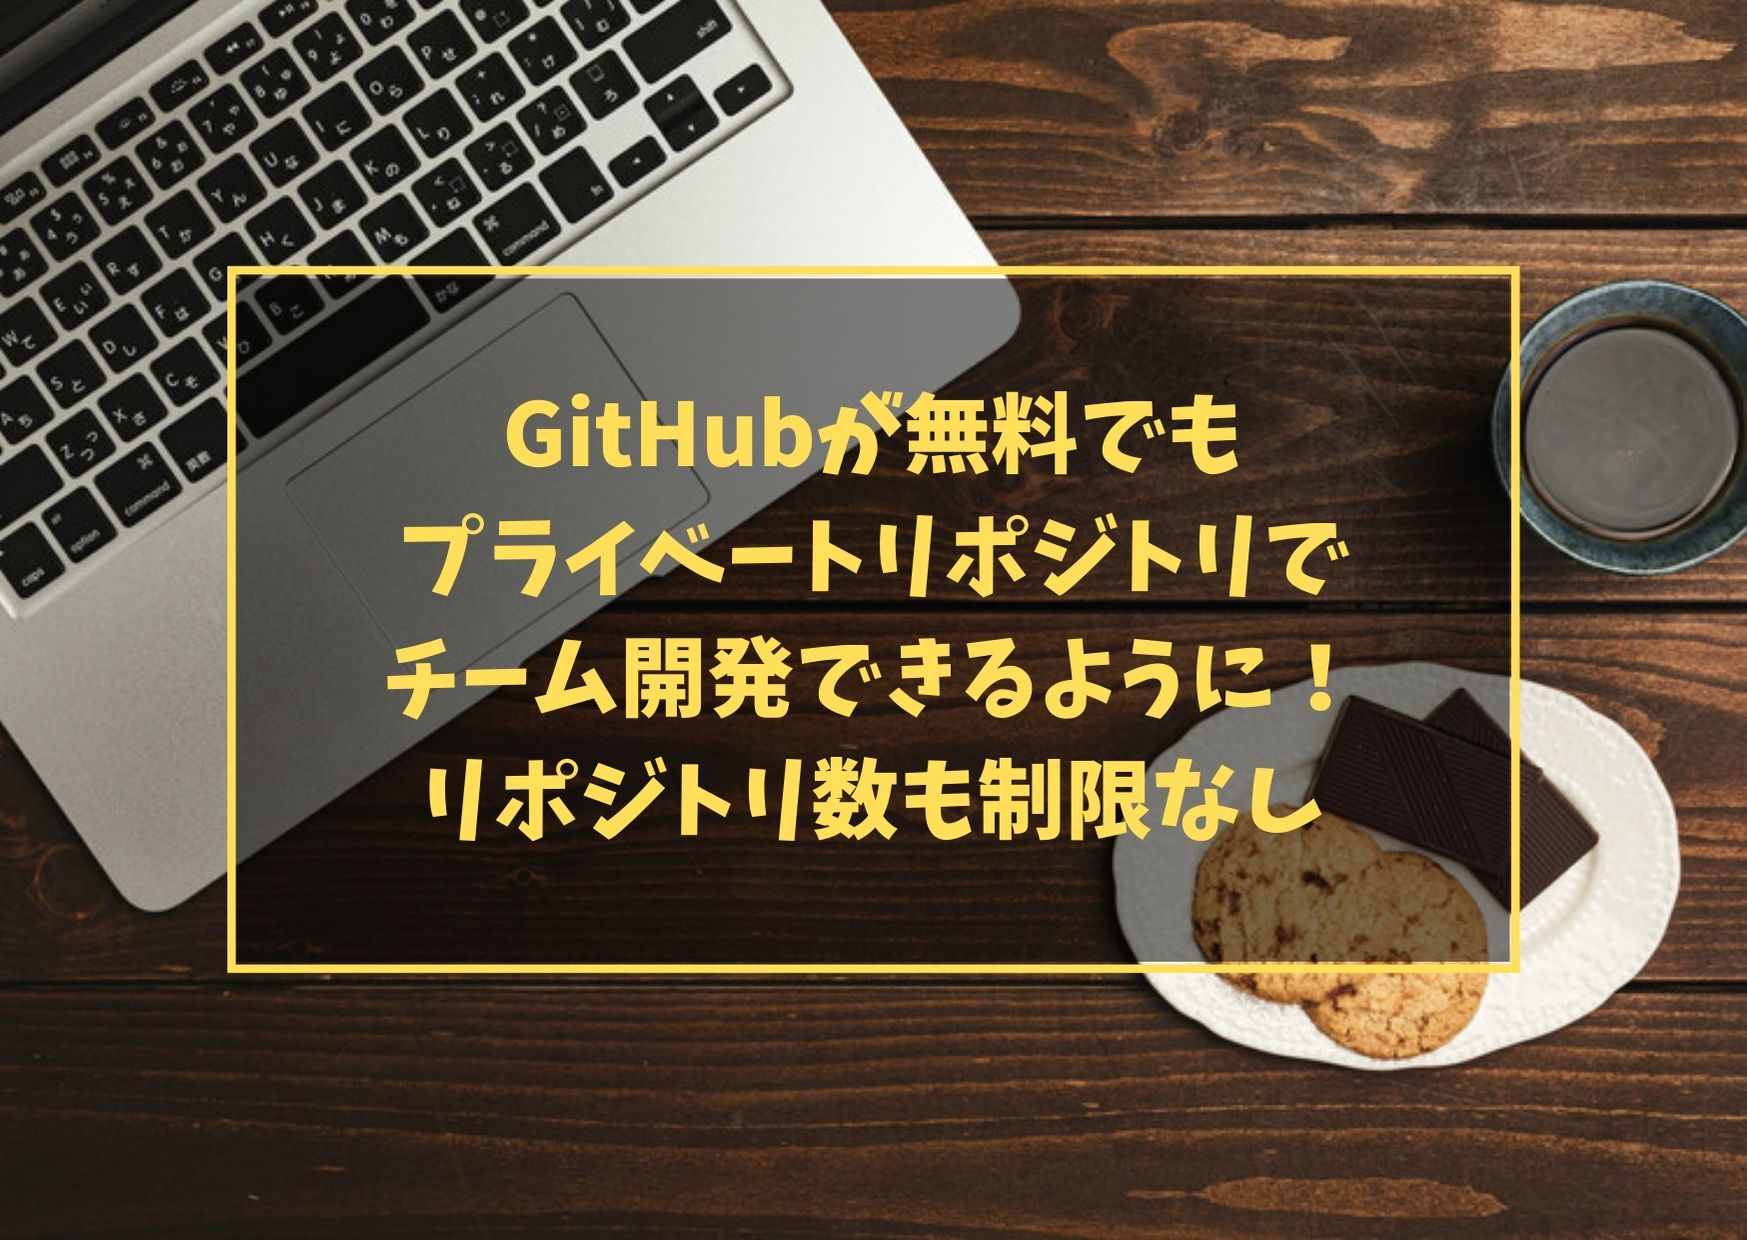 GitHubが無料でもプライベートリポジトリでチーム開発できるように！リポジトリ数も制限なし